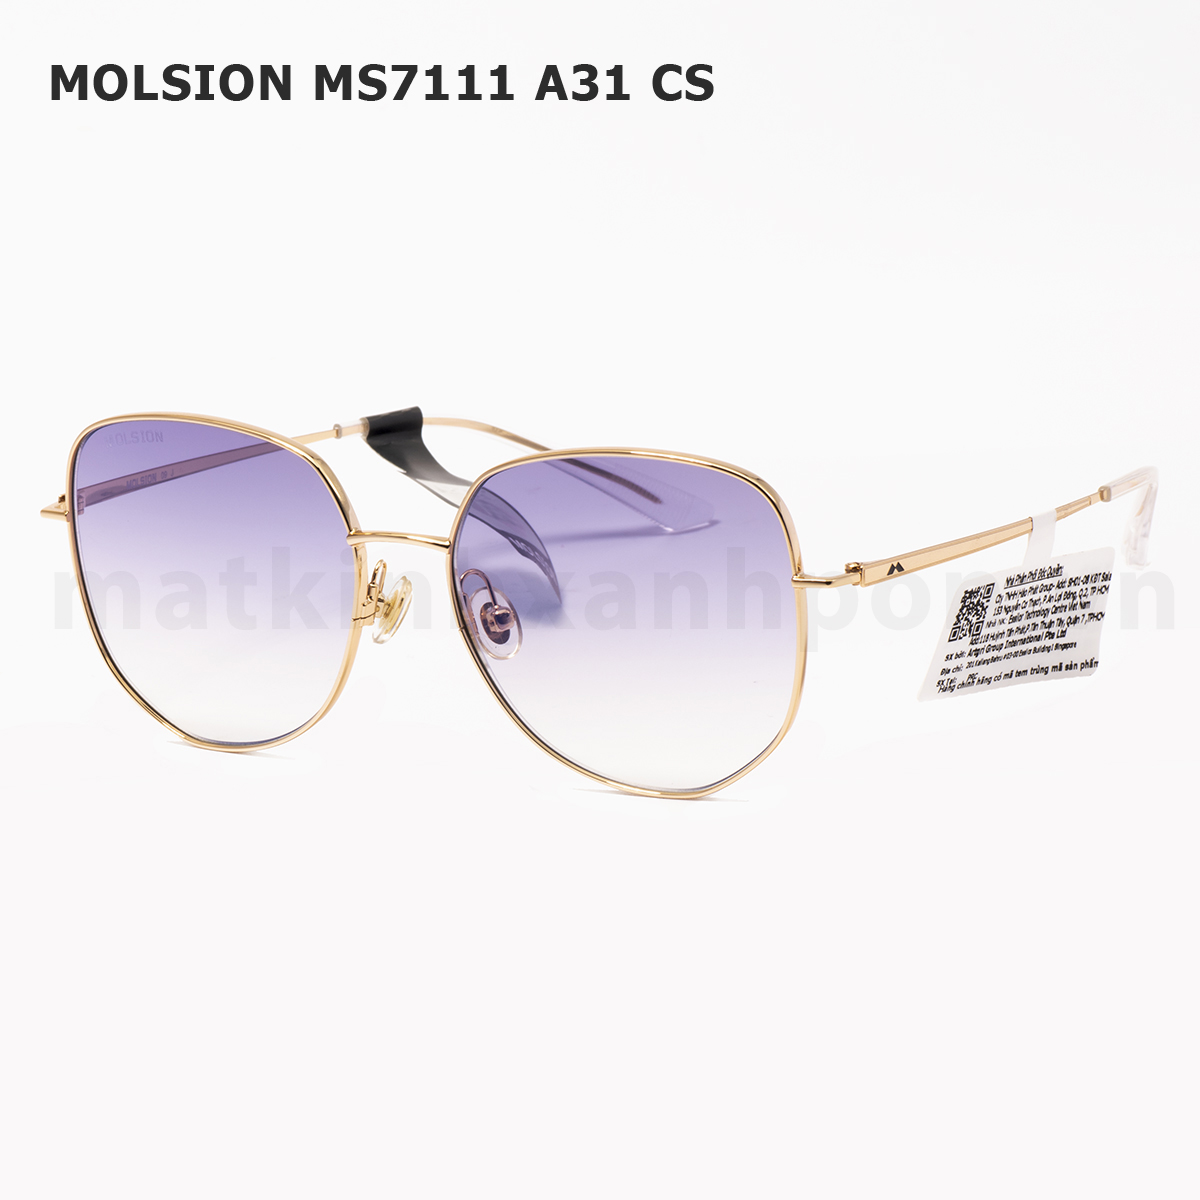 Molsion MS7111 A31 CS